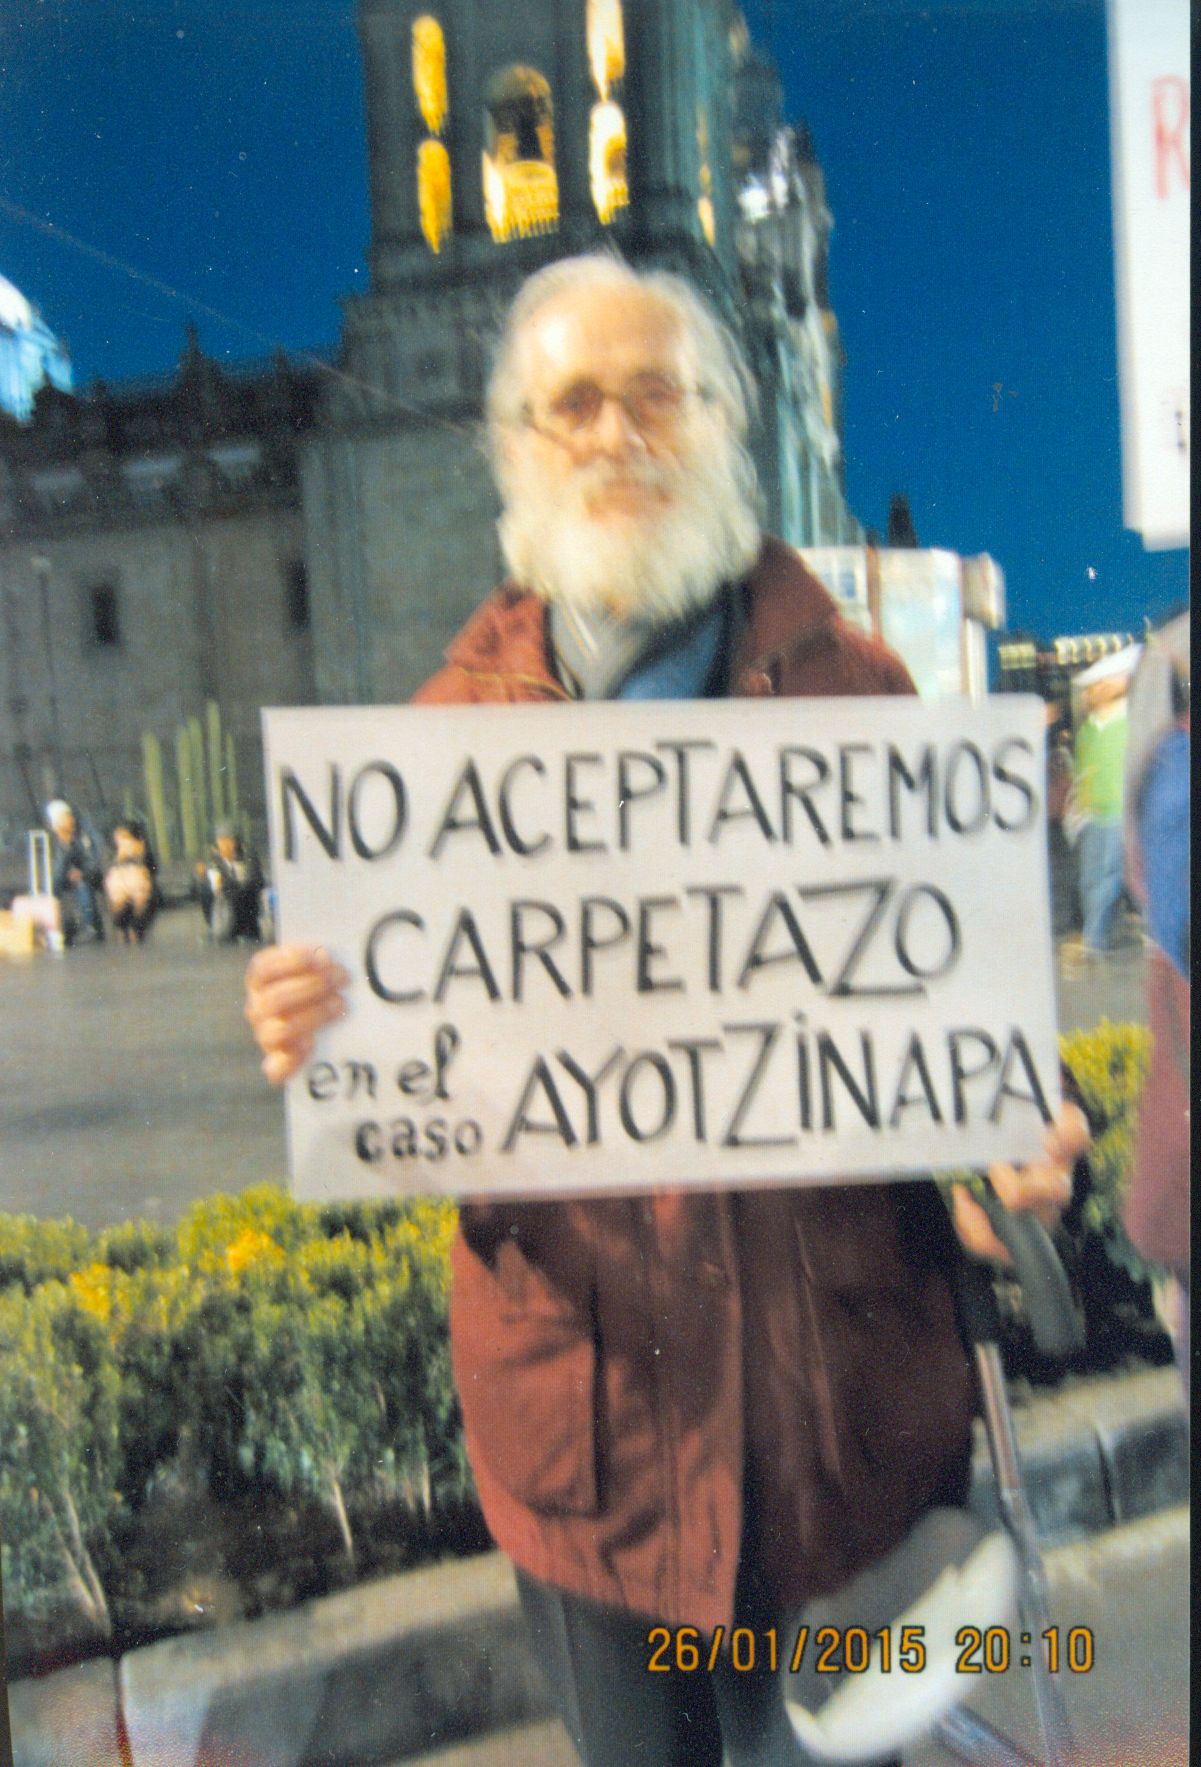 Enrique protestando por lo de Ayotzinapa